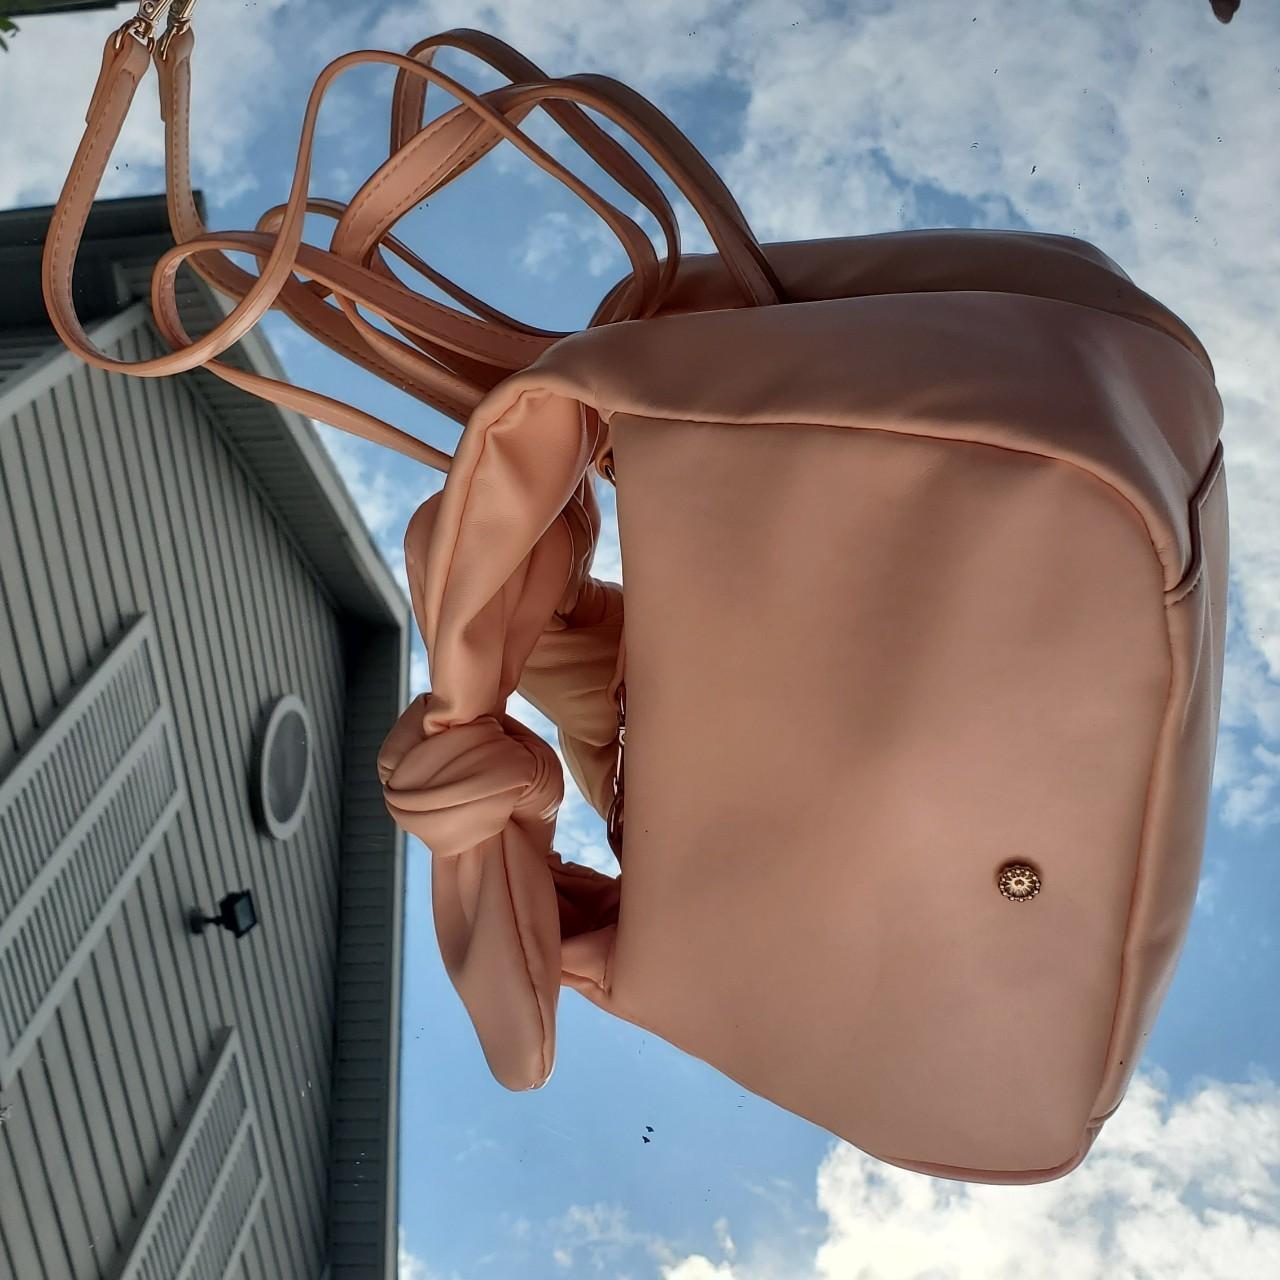 Lauren Conrad Leather Tote Bags